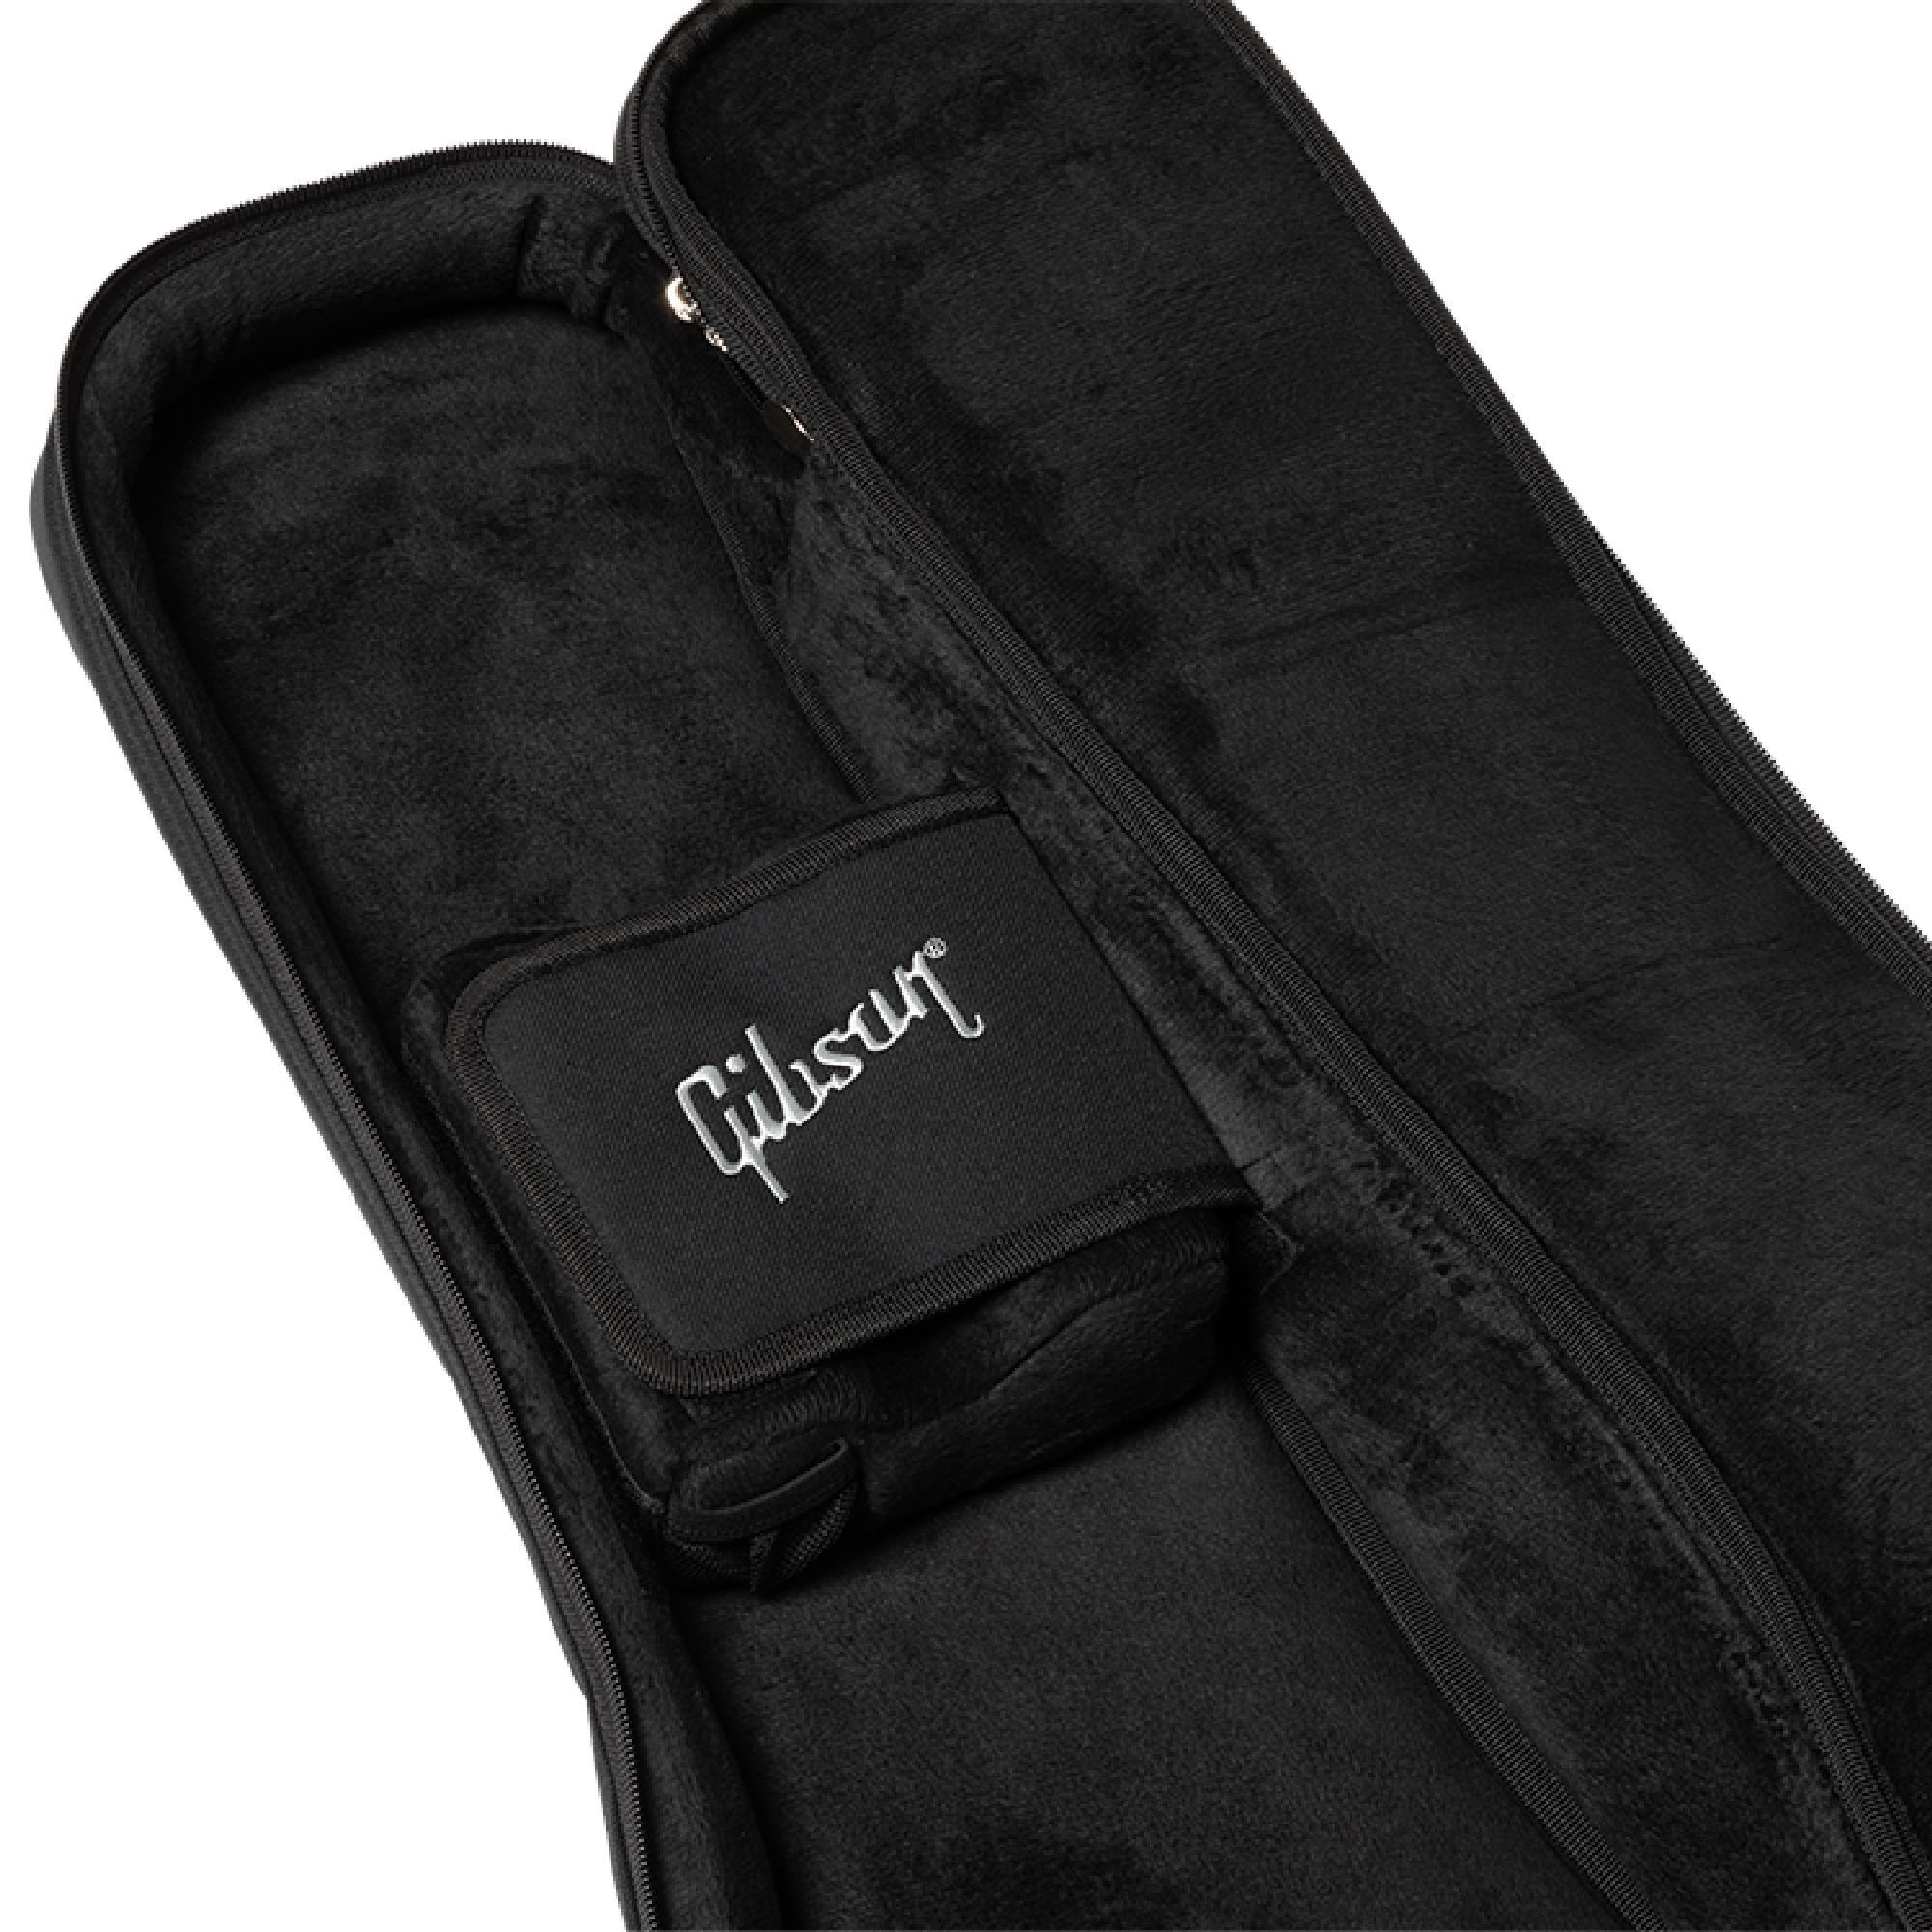 Gibson Premium Gigbag, Les Paul & SG Black Чехлы и кейсы для электрогитар